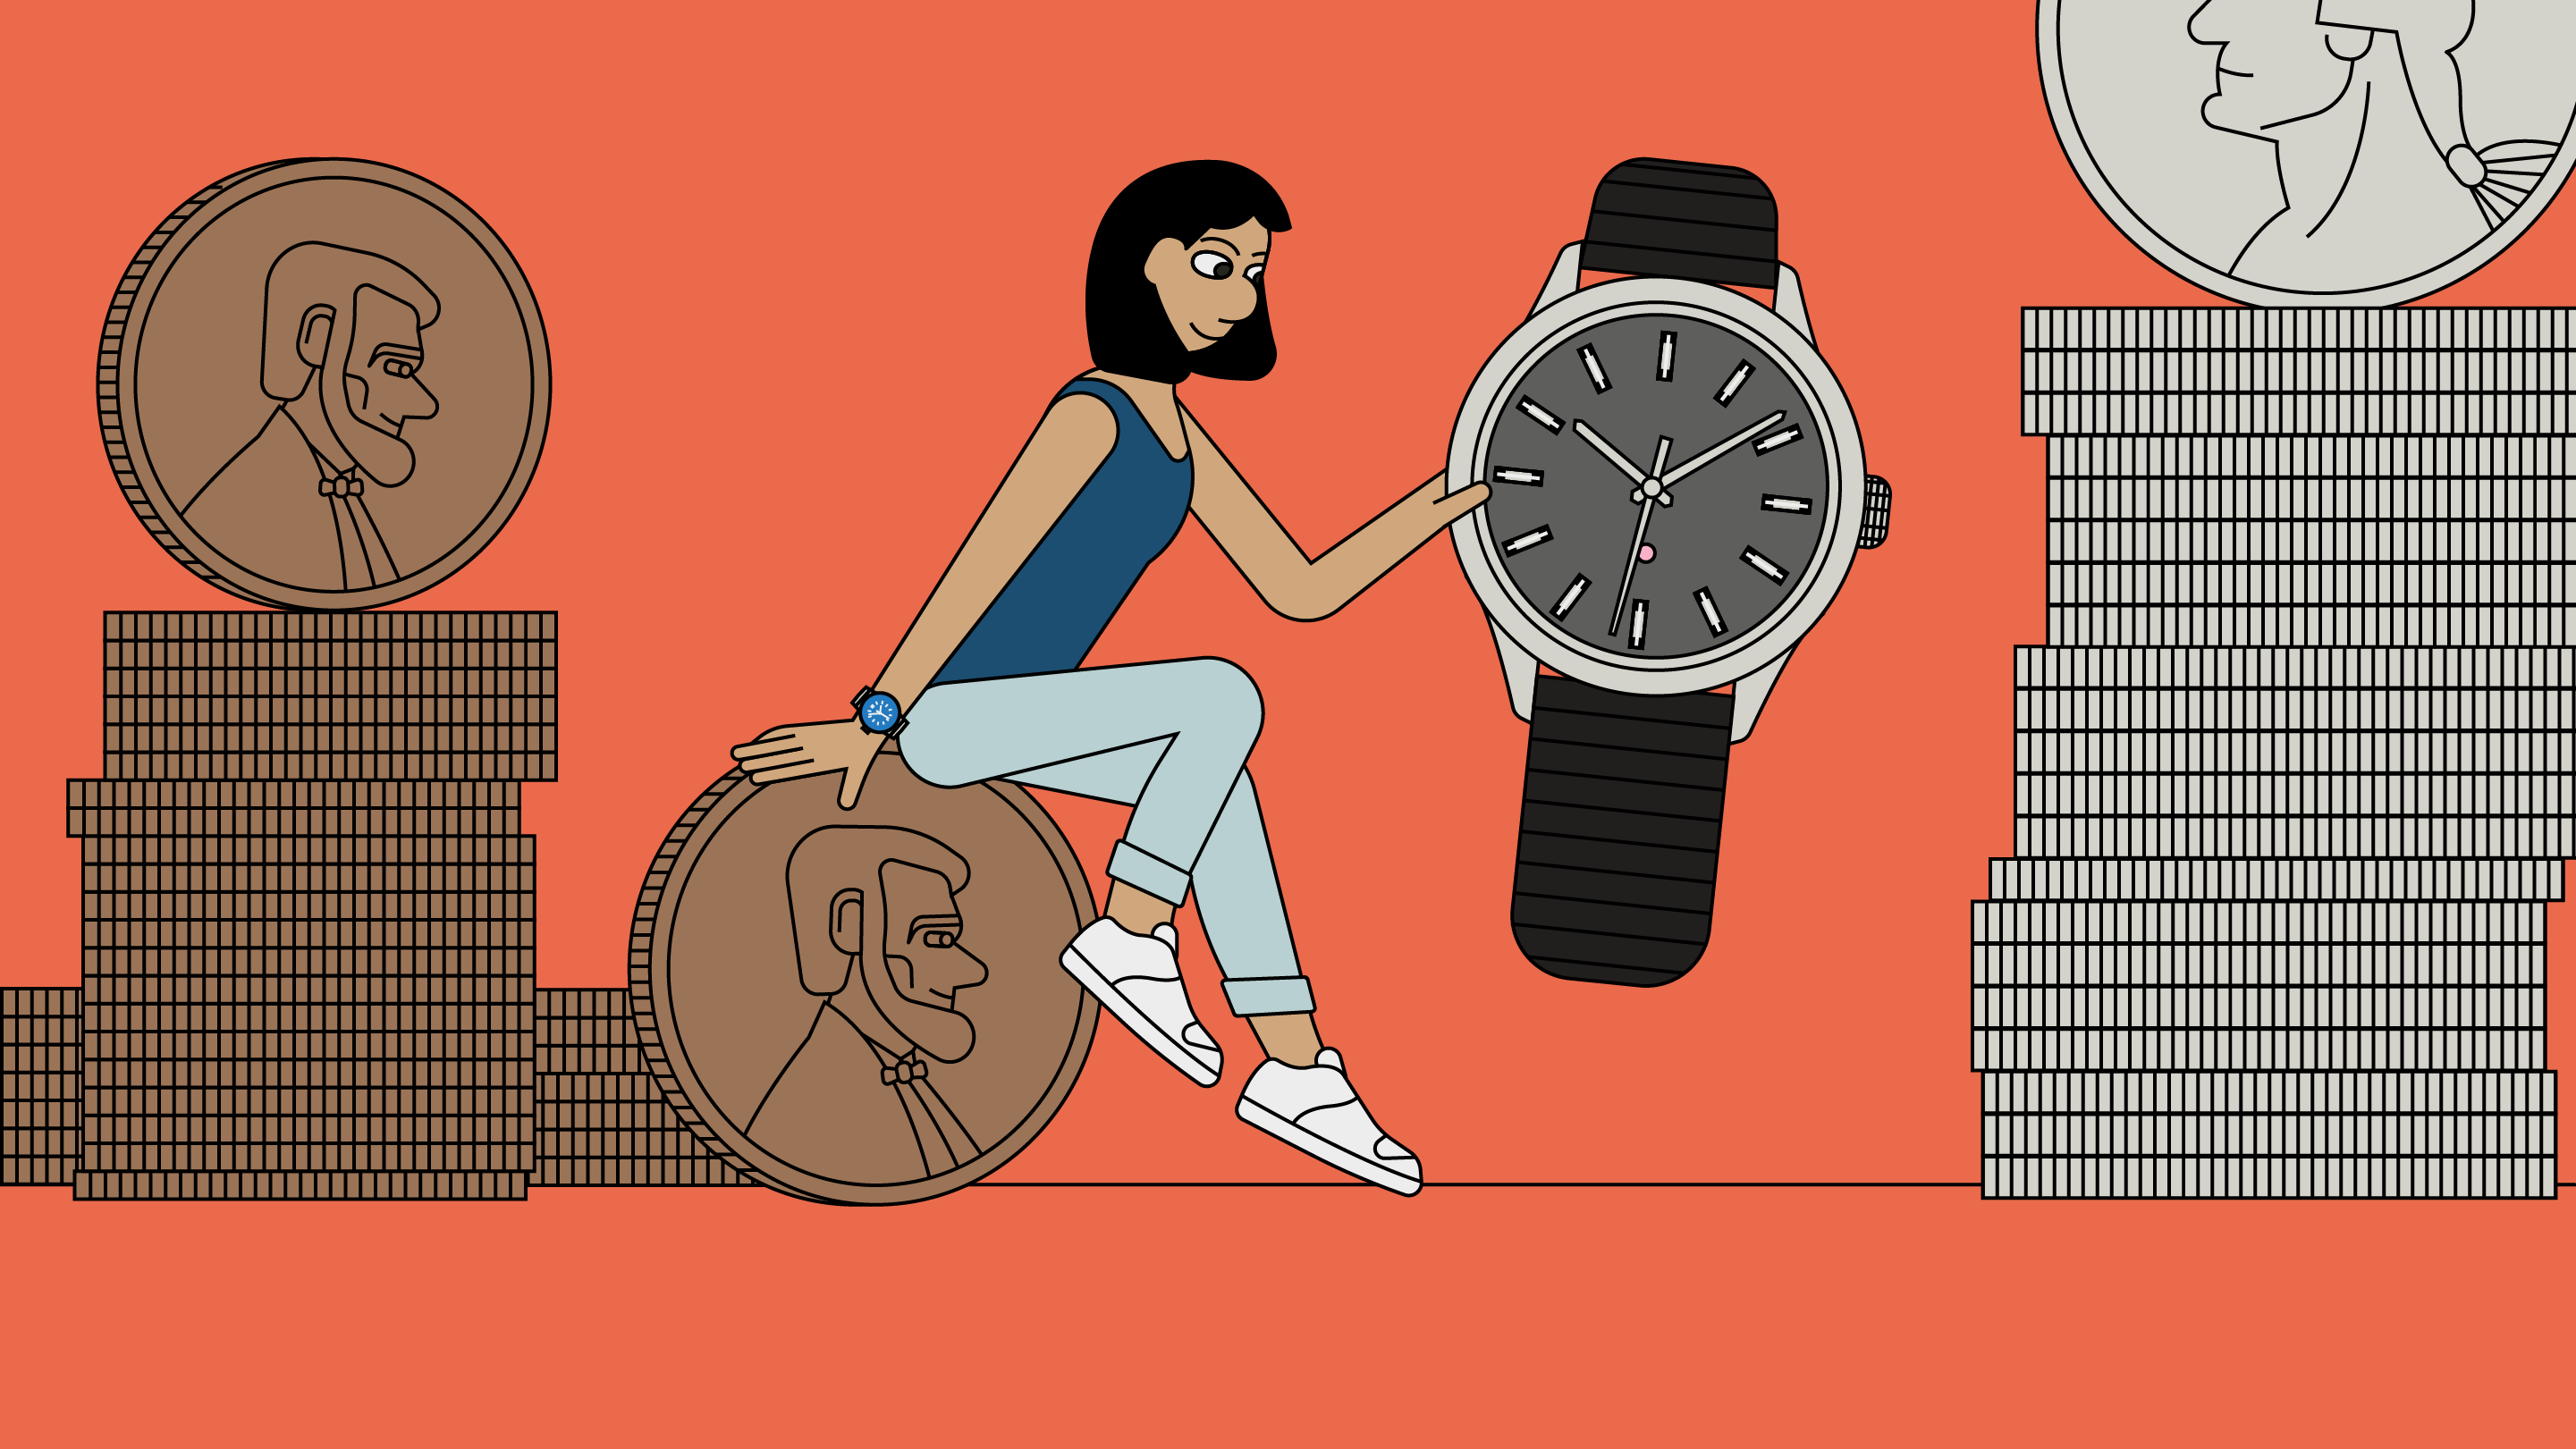 Jual [ORIGINAL EDIFY] Jam tangan wanita/Jam Tangan Analog/Jam Tangan 5118 |  Shopee Indonesia